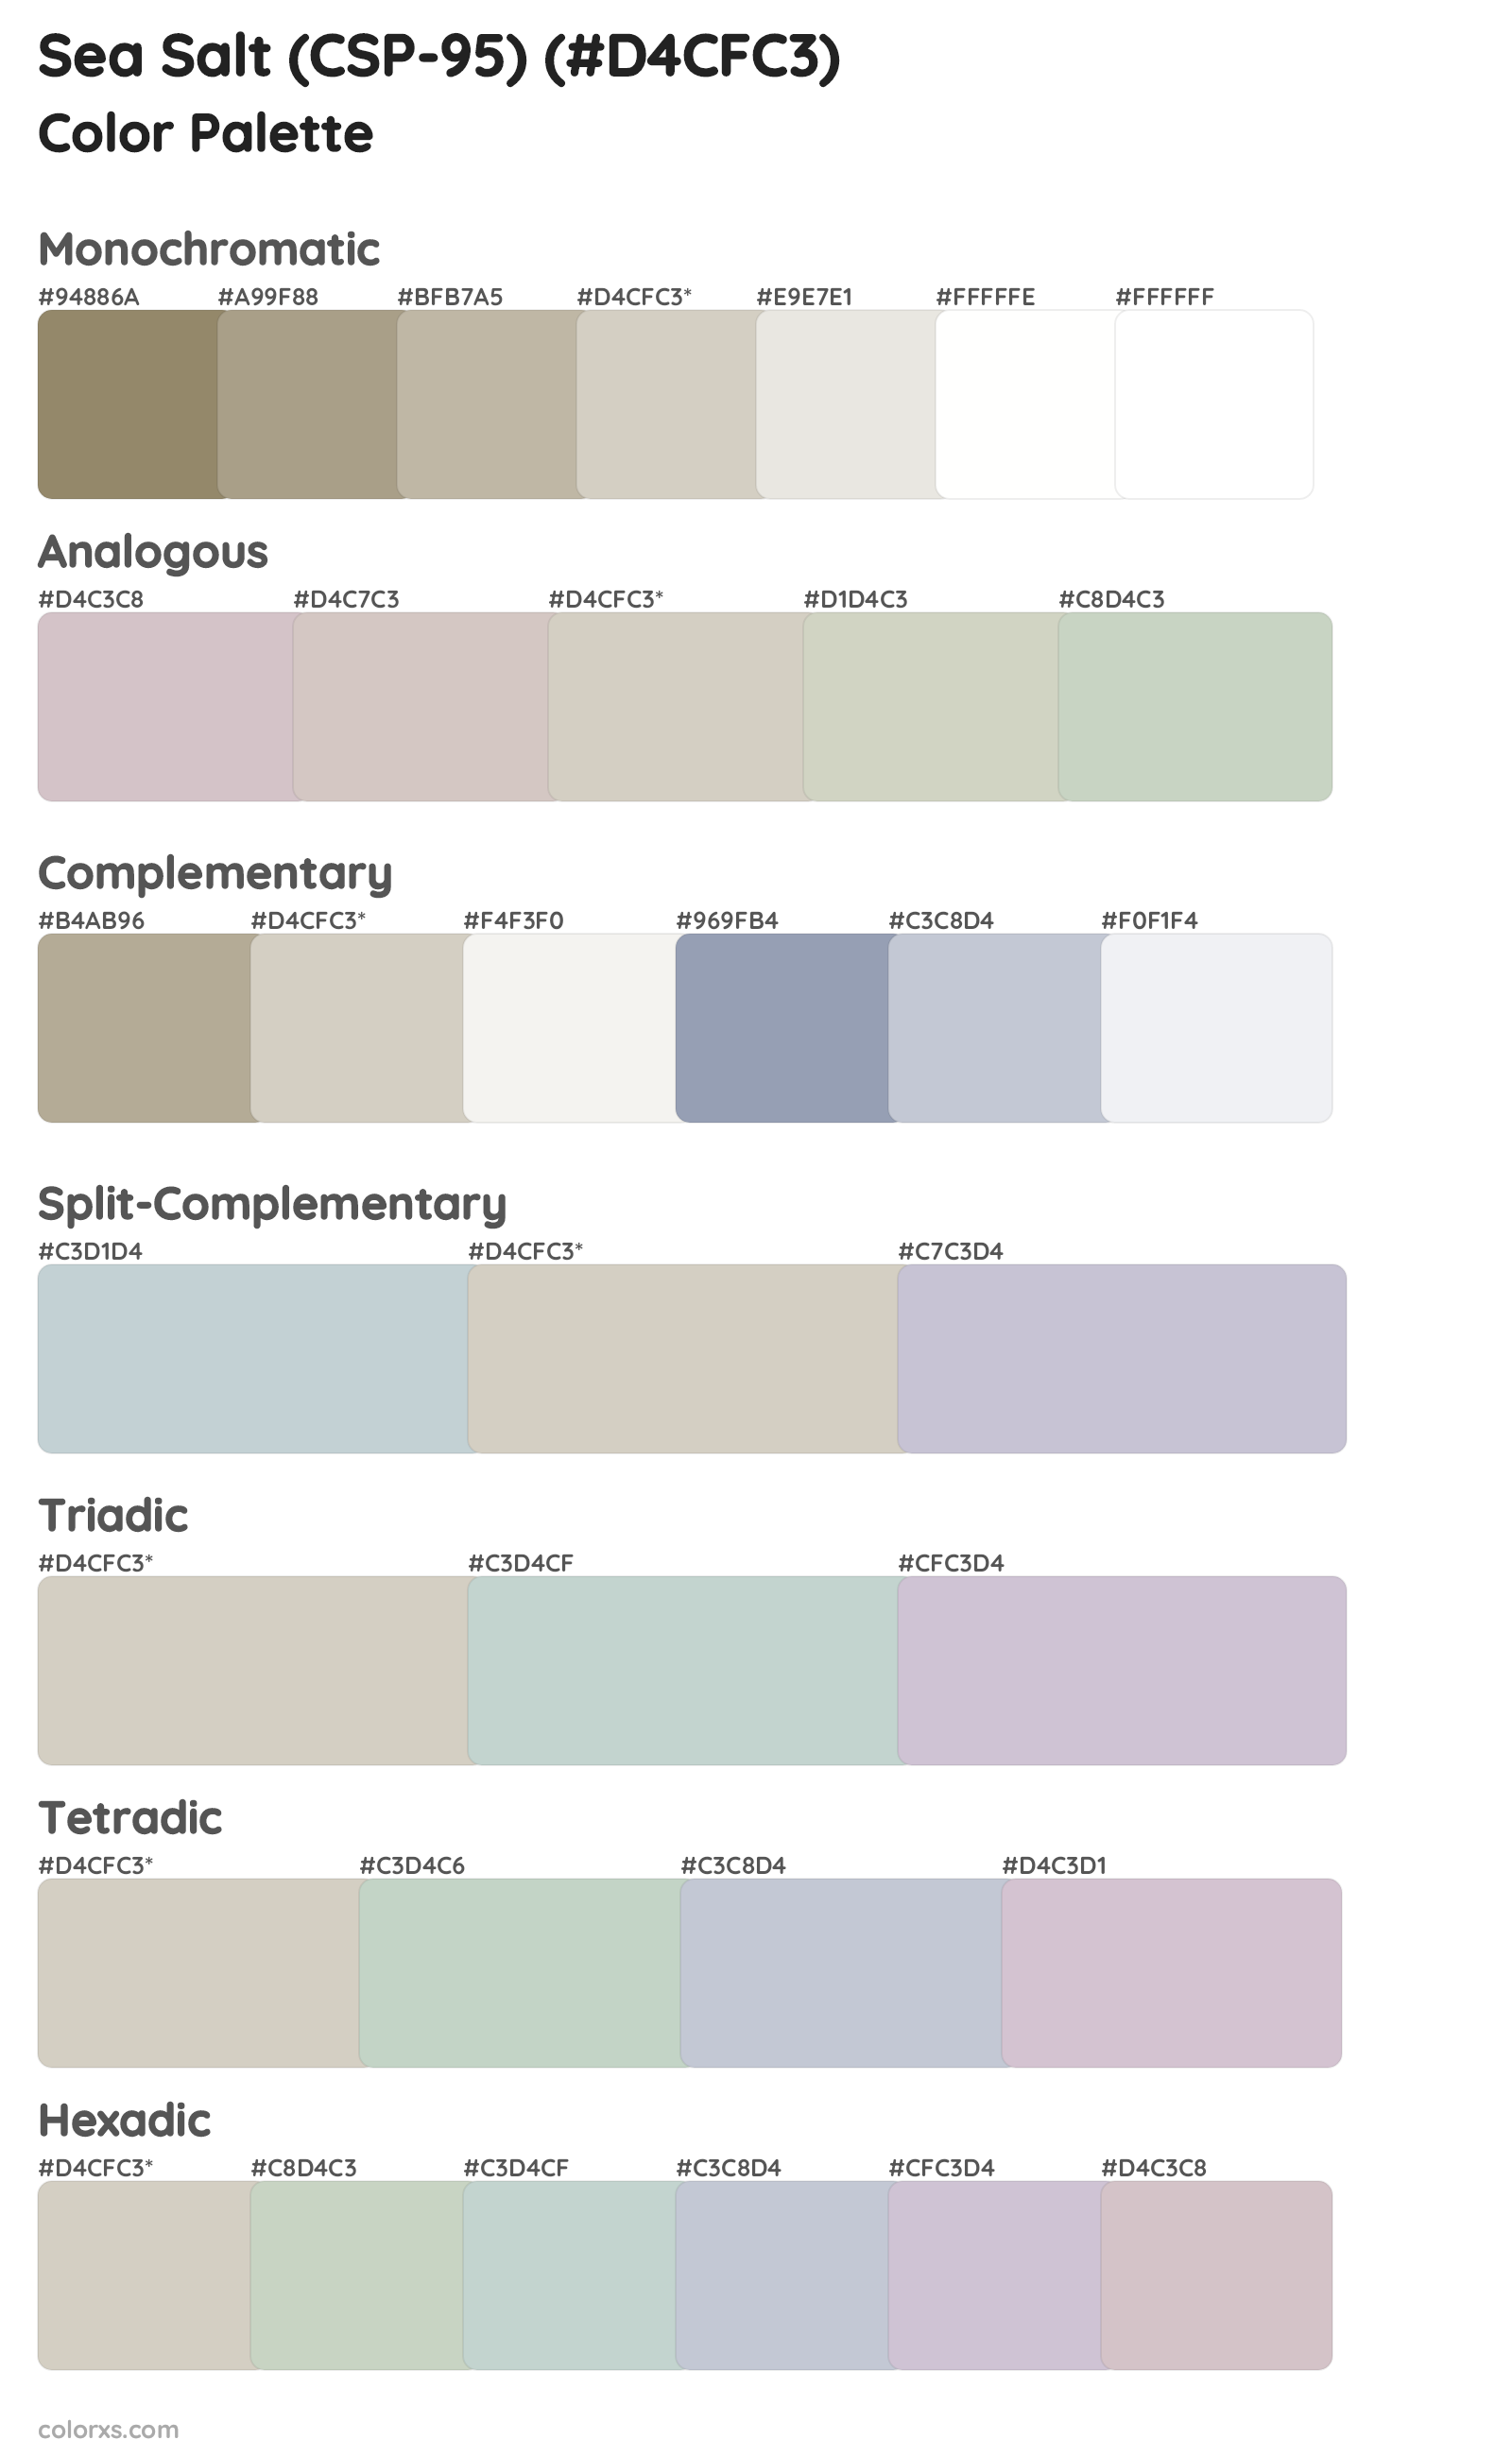 Sea Salt (CSP-95) Color Scheme Palettes